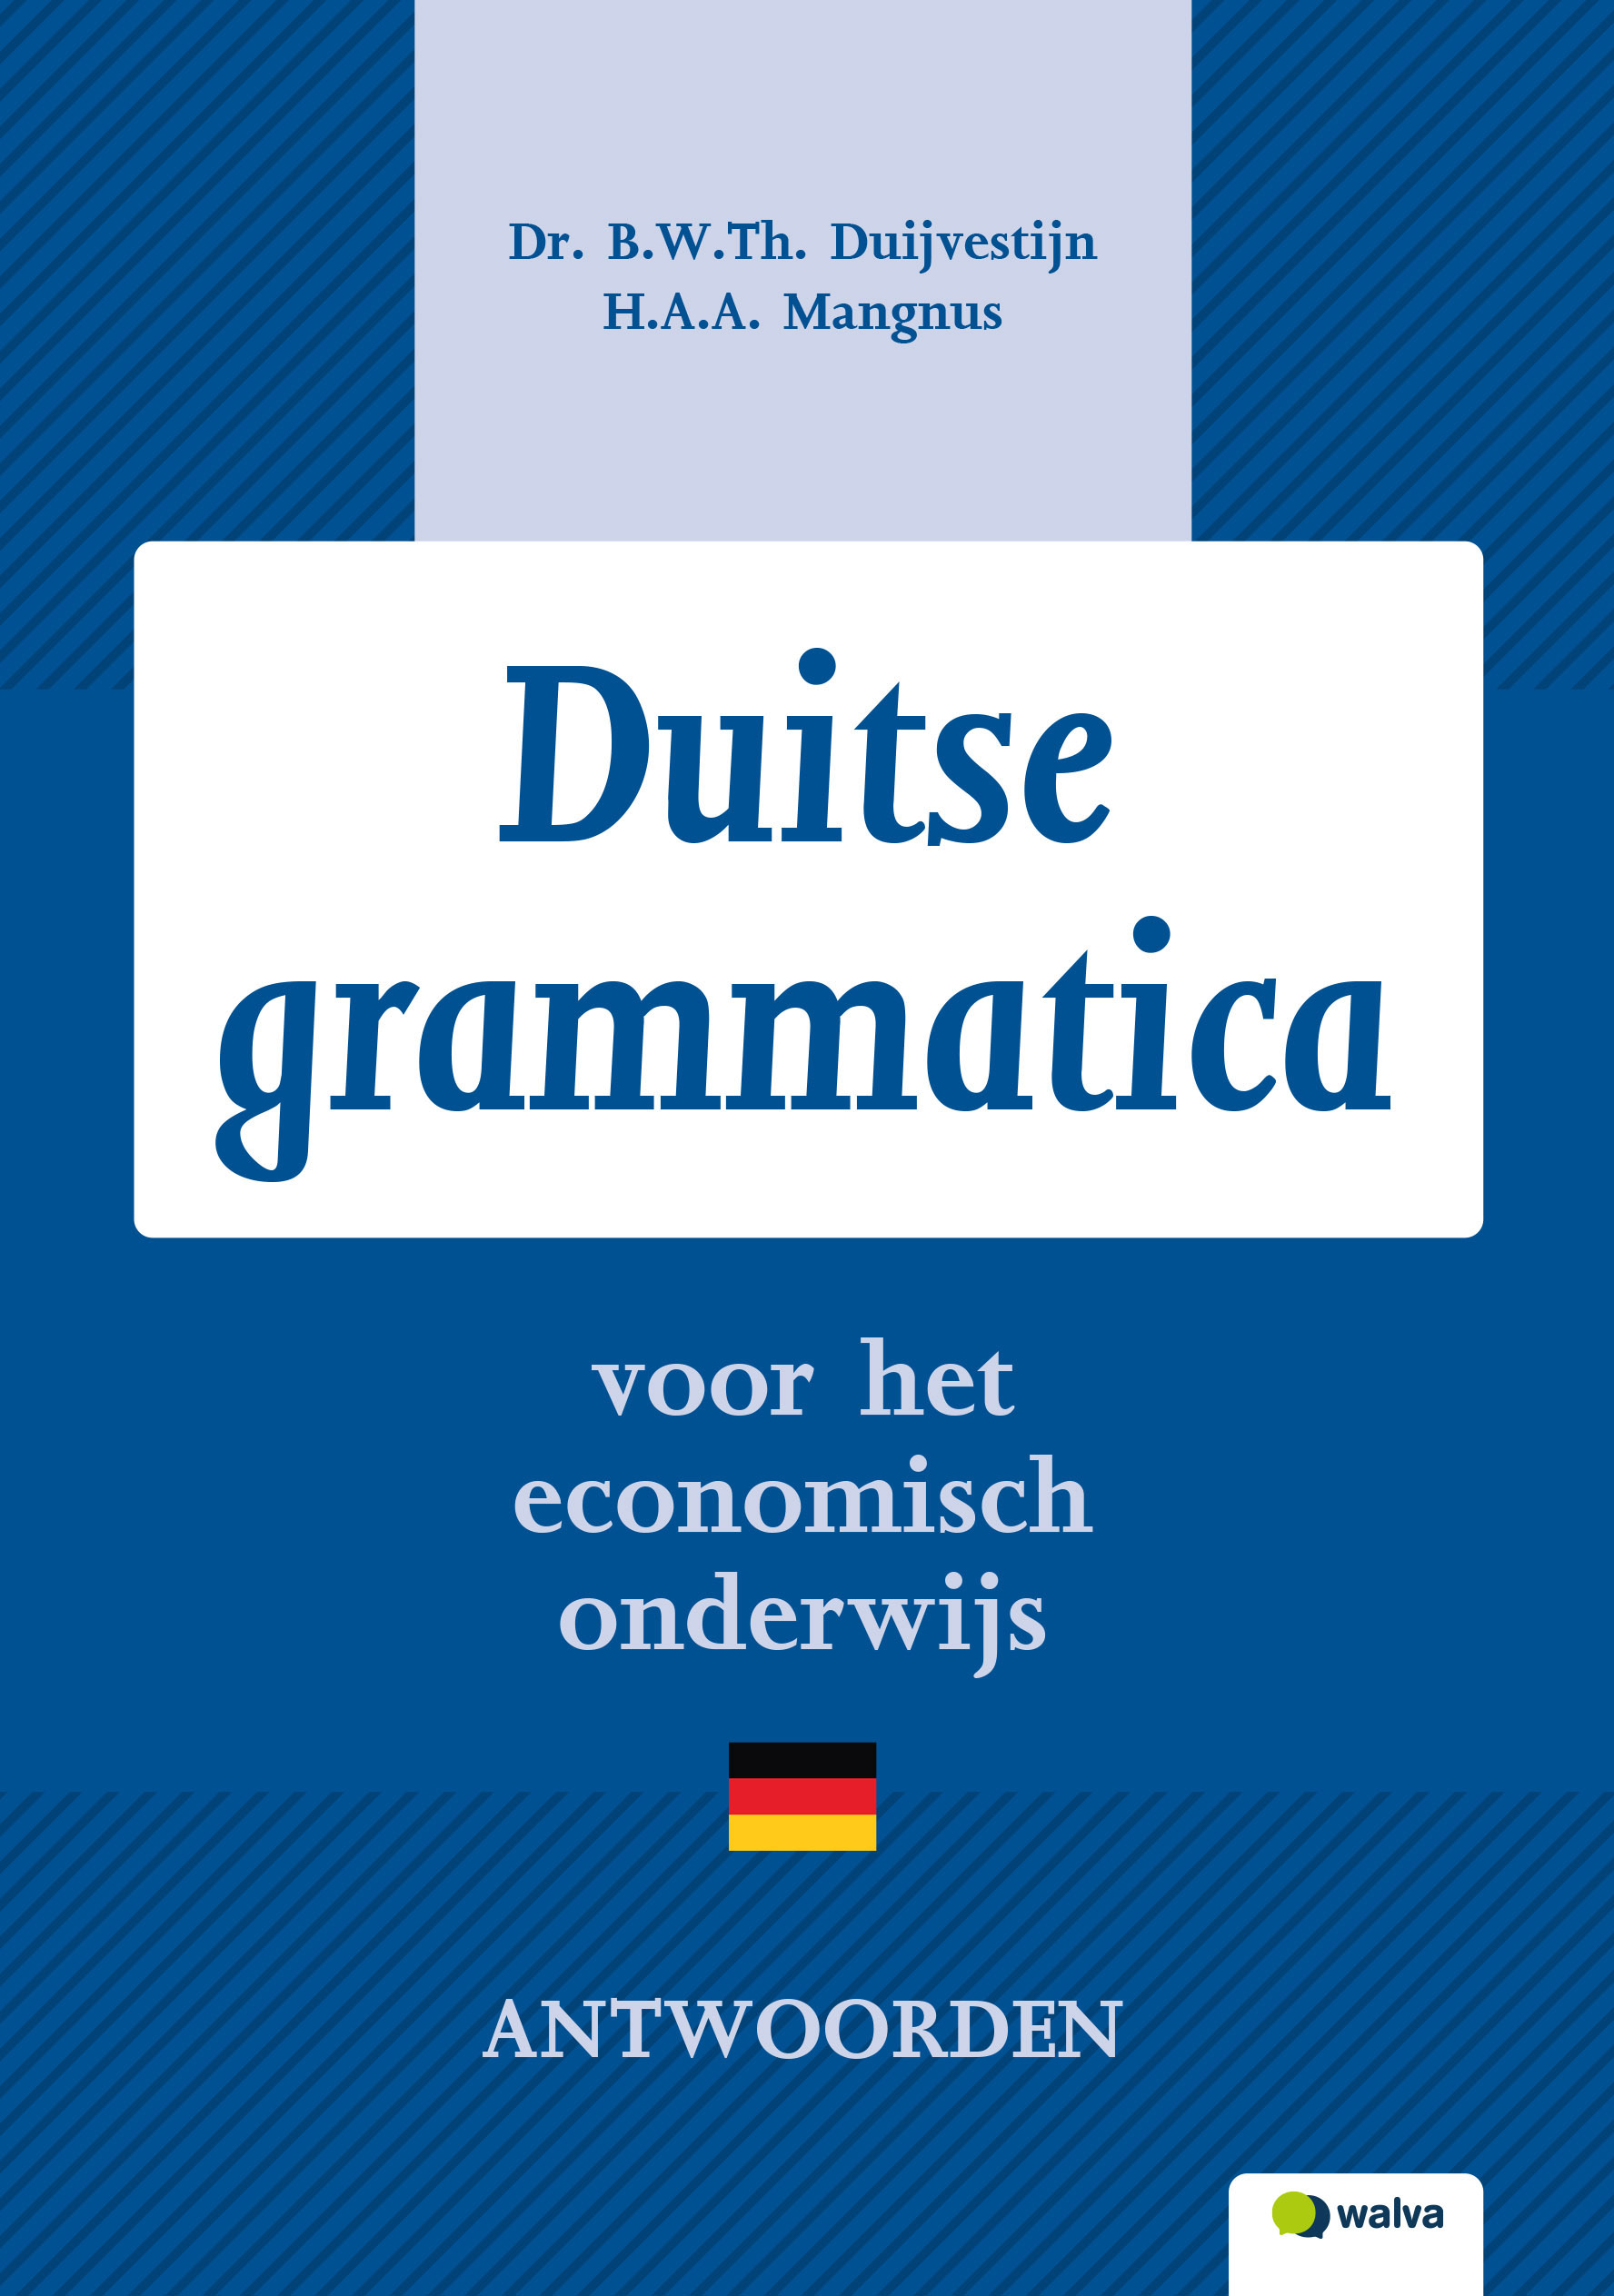 WDHGRA001 Duitse grammatica, antwoorden